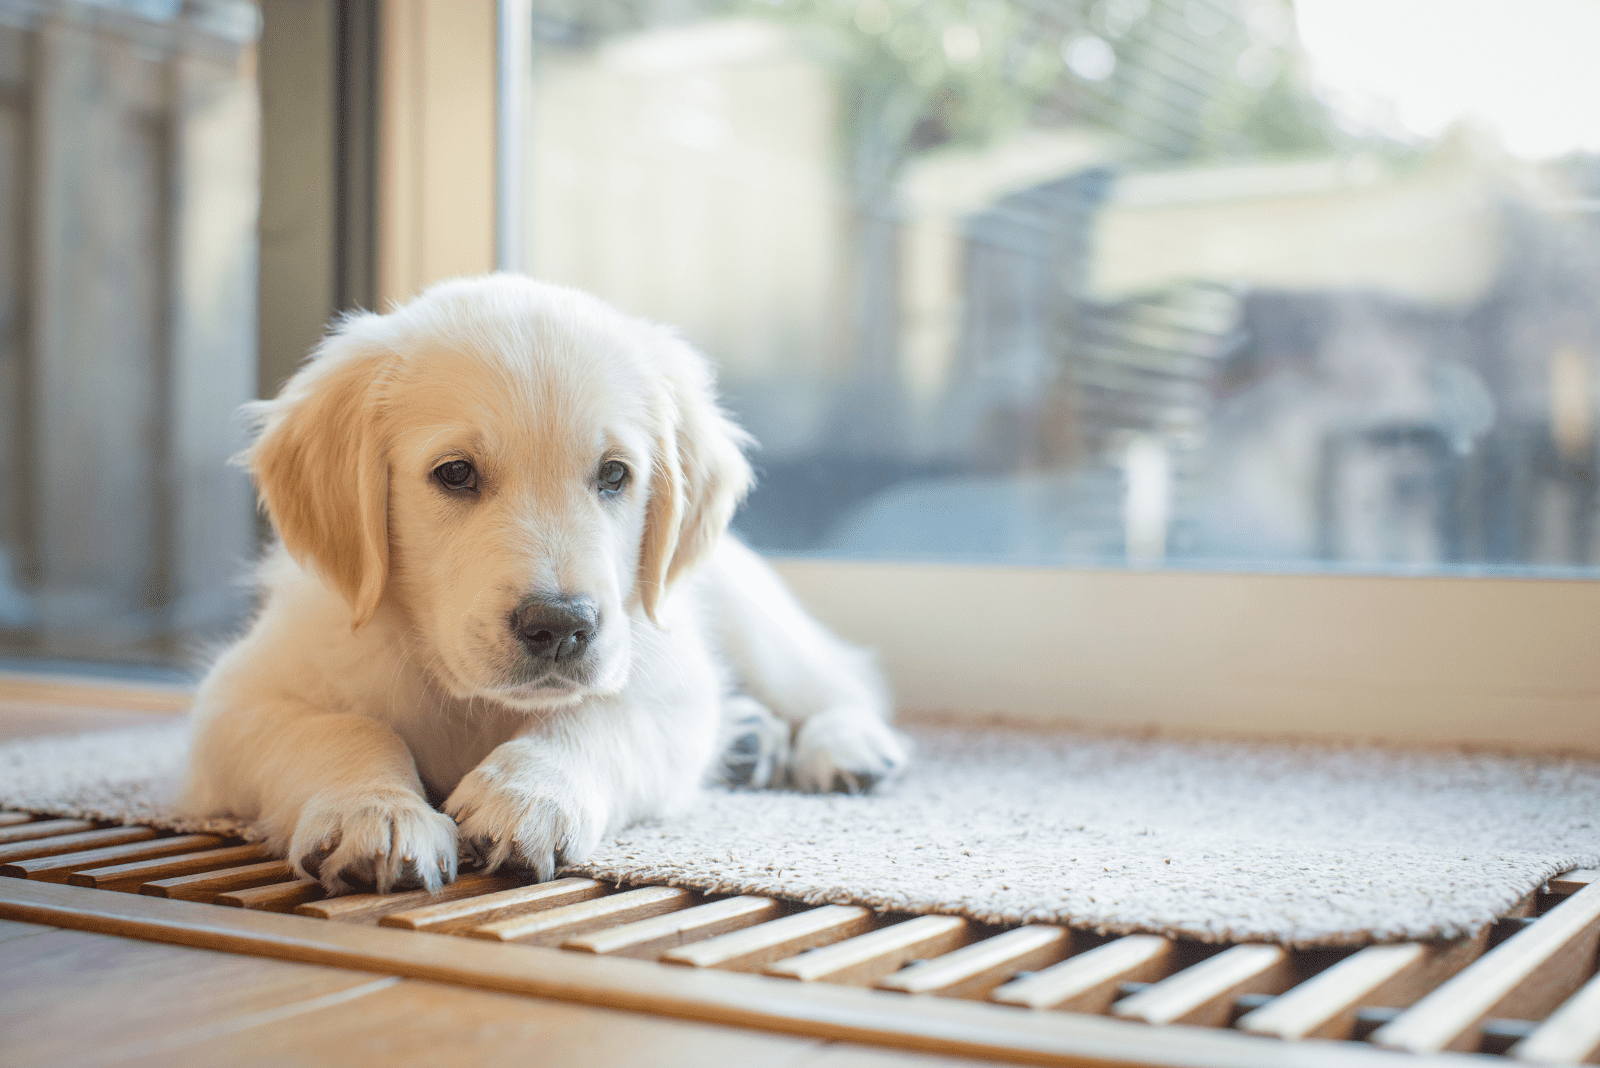 A golden retriever puppy lies by the window